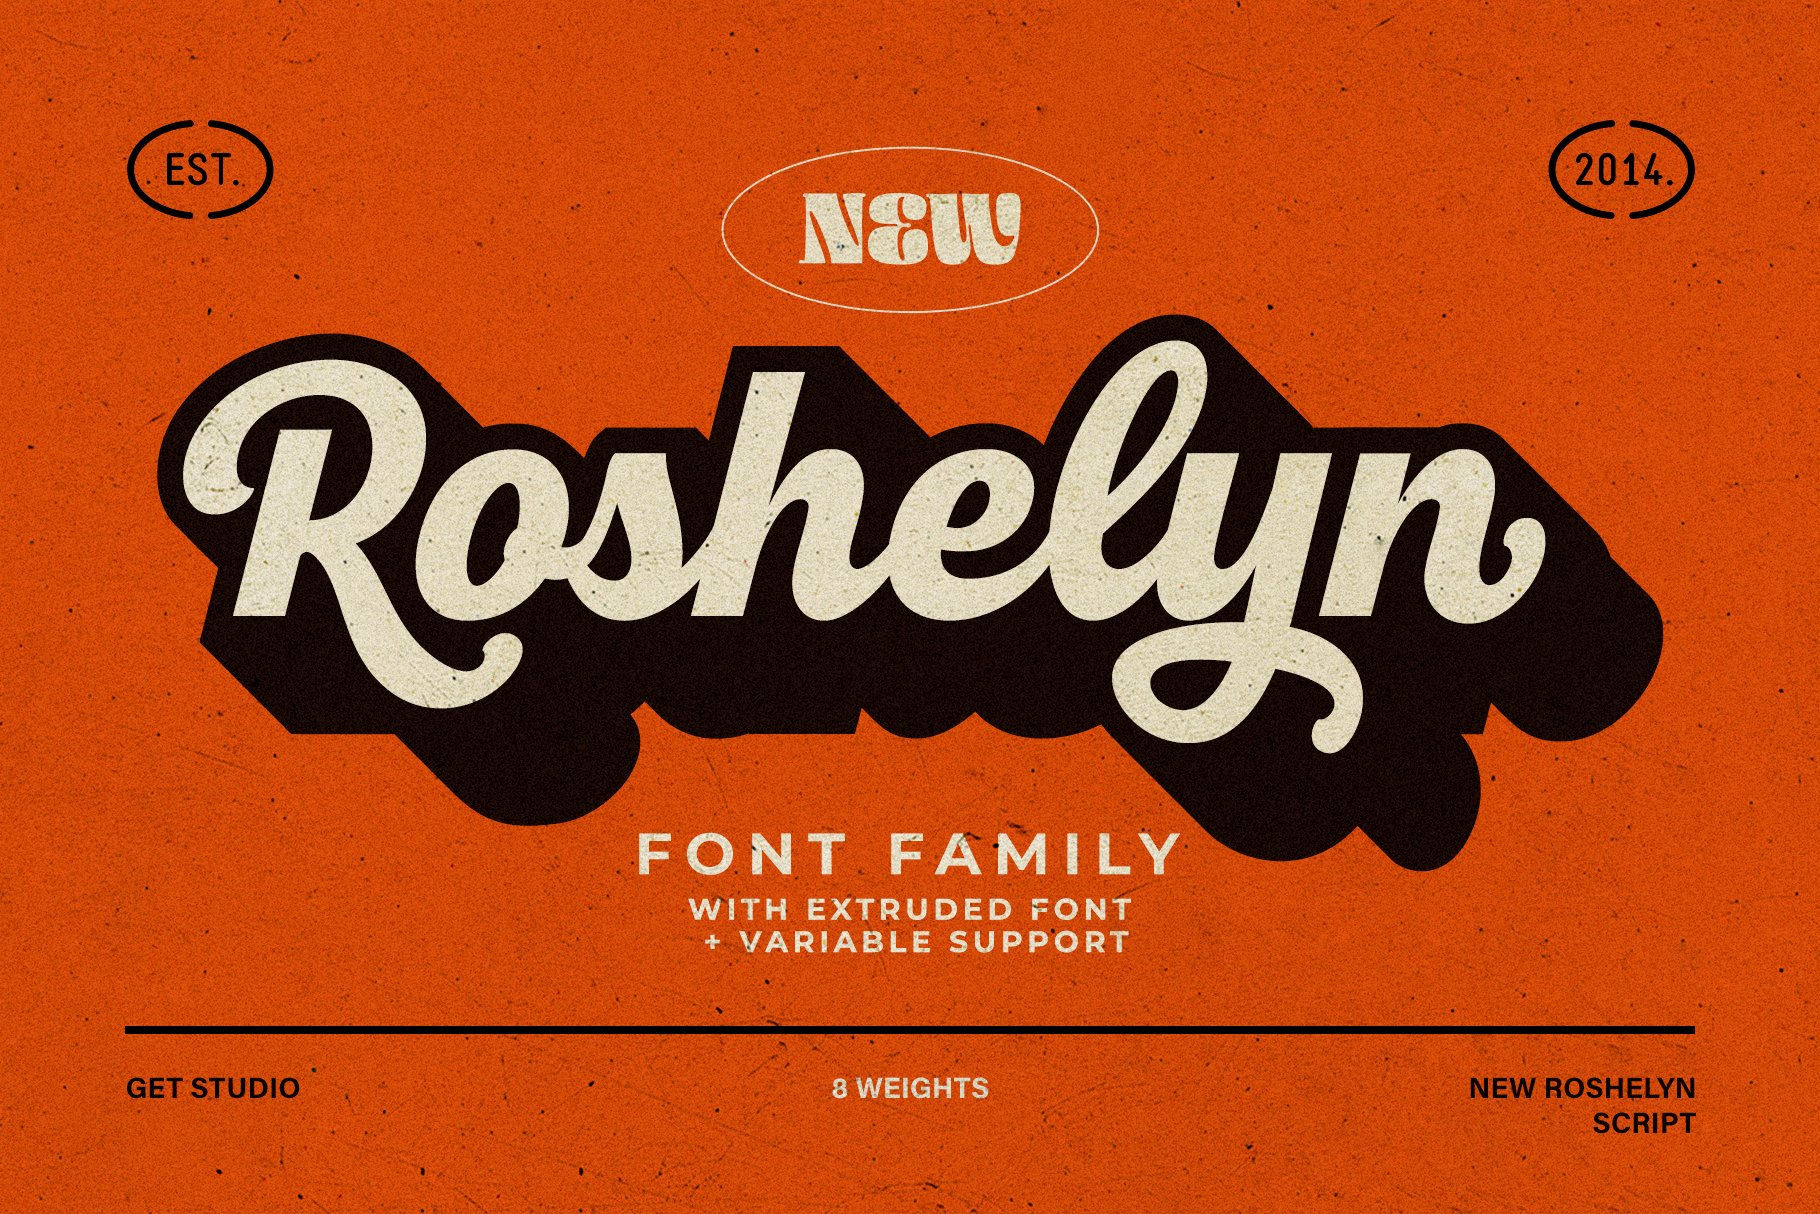 New Roshelyn Script - Font Familycover image.